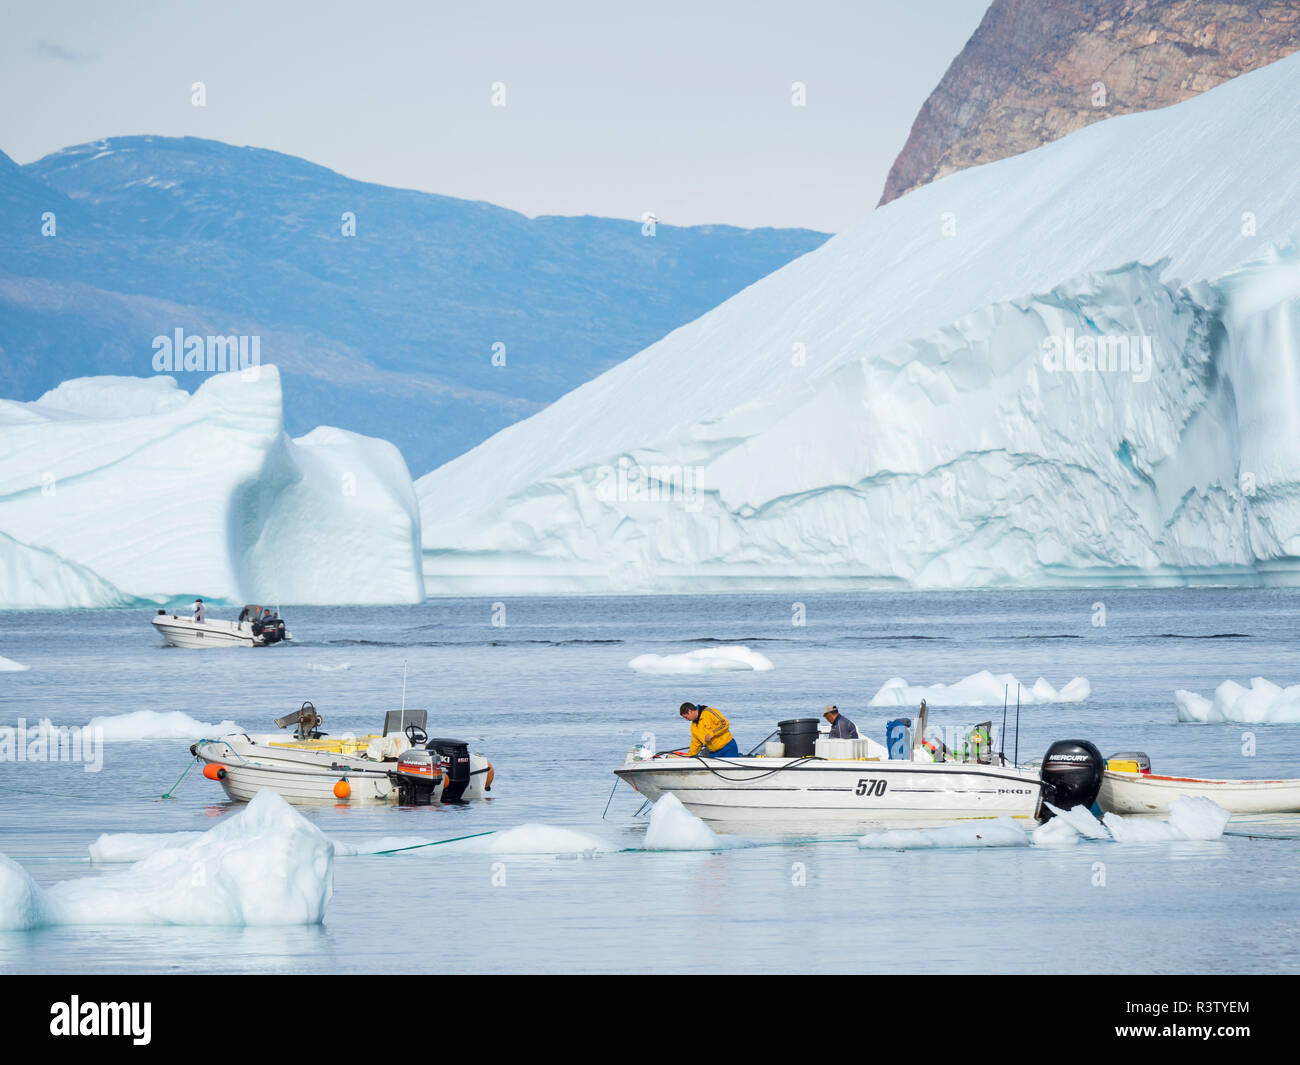 Port avec bateaux de pêche typiques entre les icebergs. Petite ville d'Uummannaq dans le nord-ouest du Groenland, le Danemark (usage éditorial uniquement) Banque D'Images